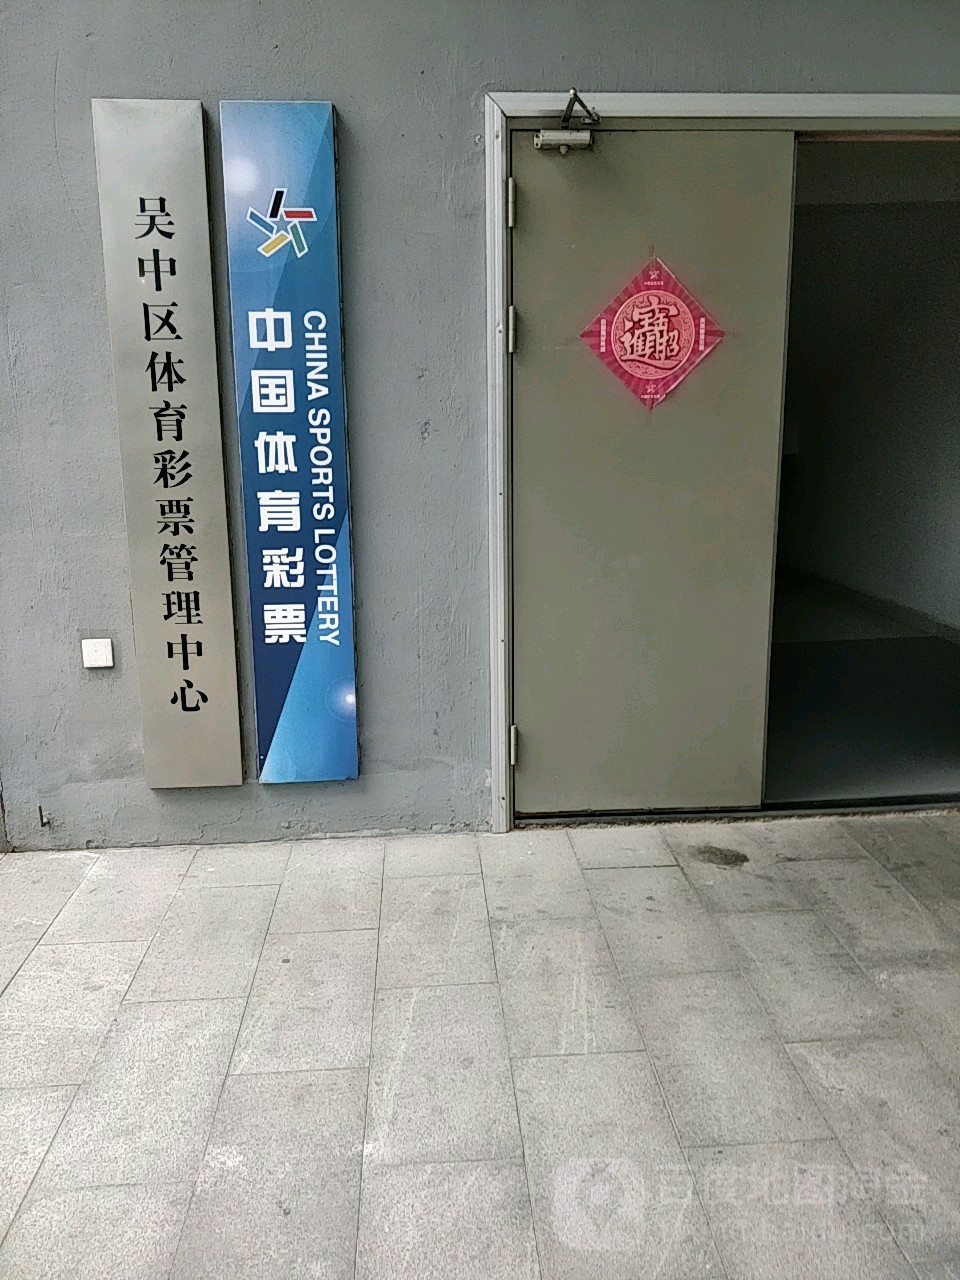 吳中區體育彩票管理中心